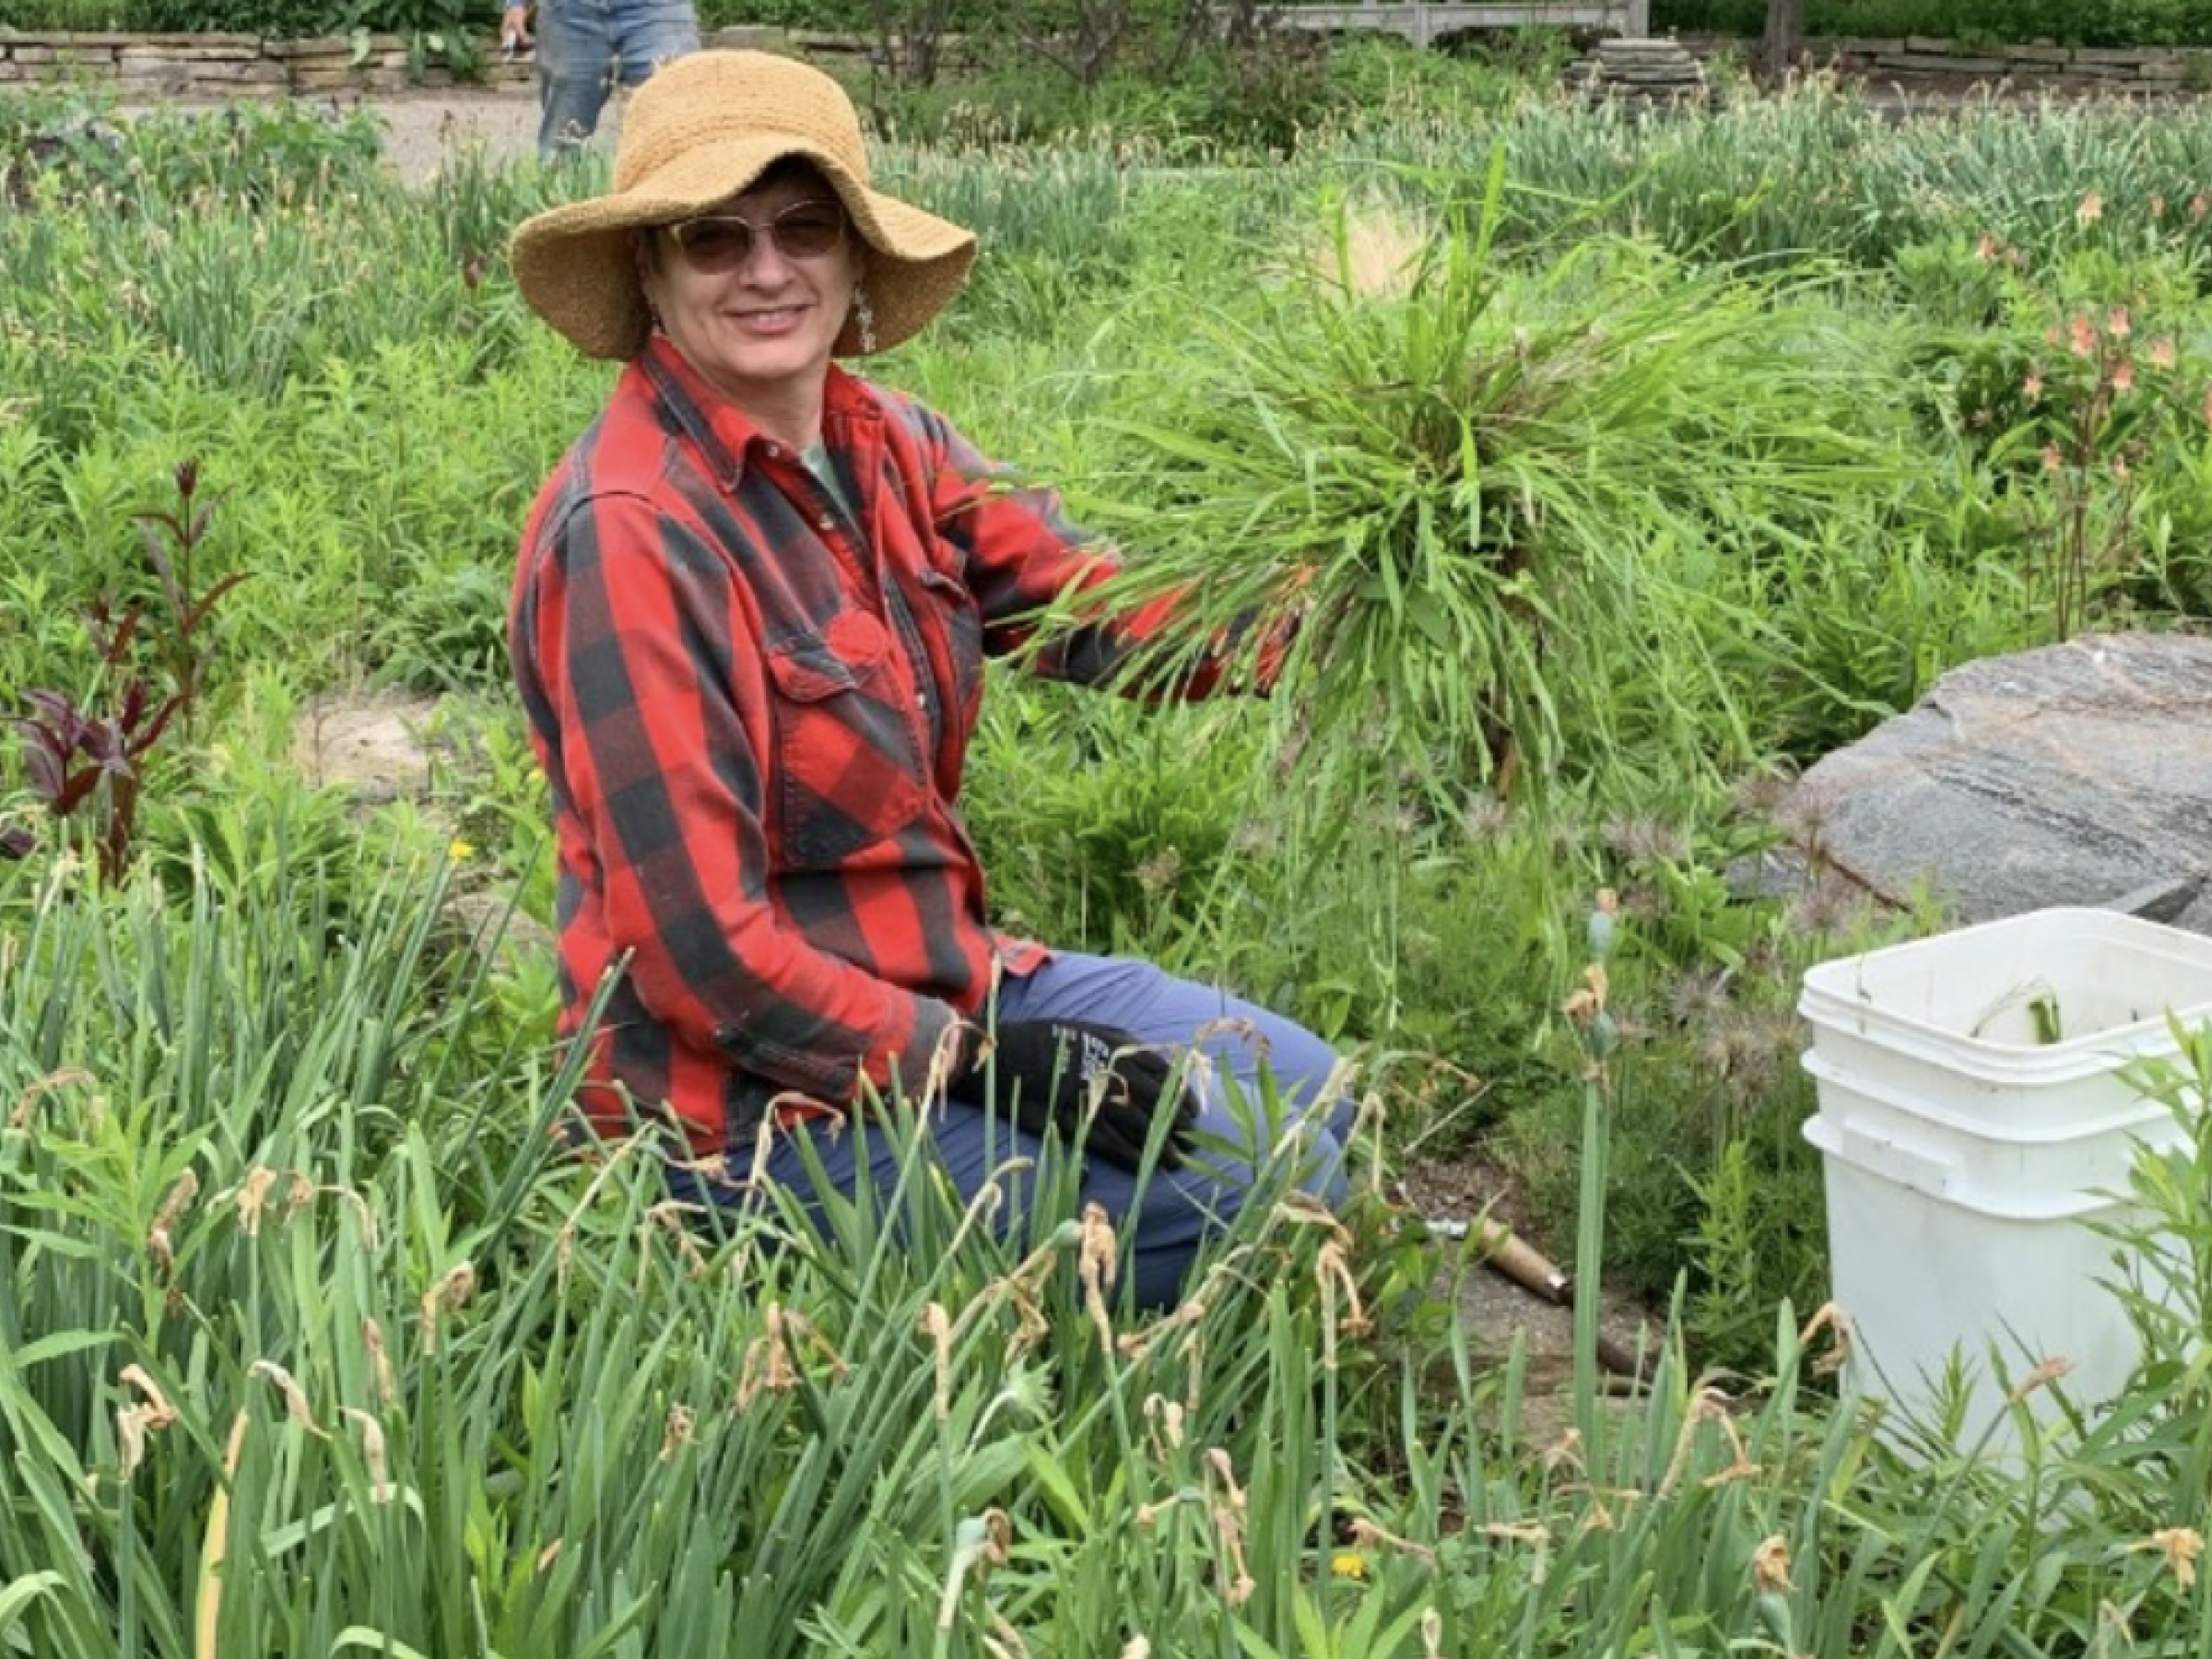 Volunteer collecting weeds in an outdoor garden